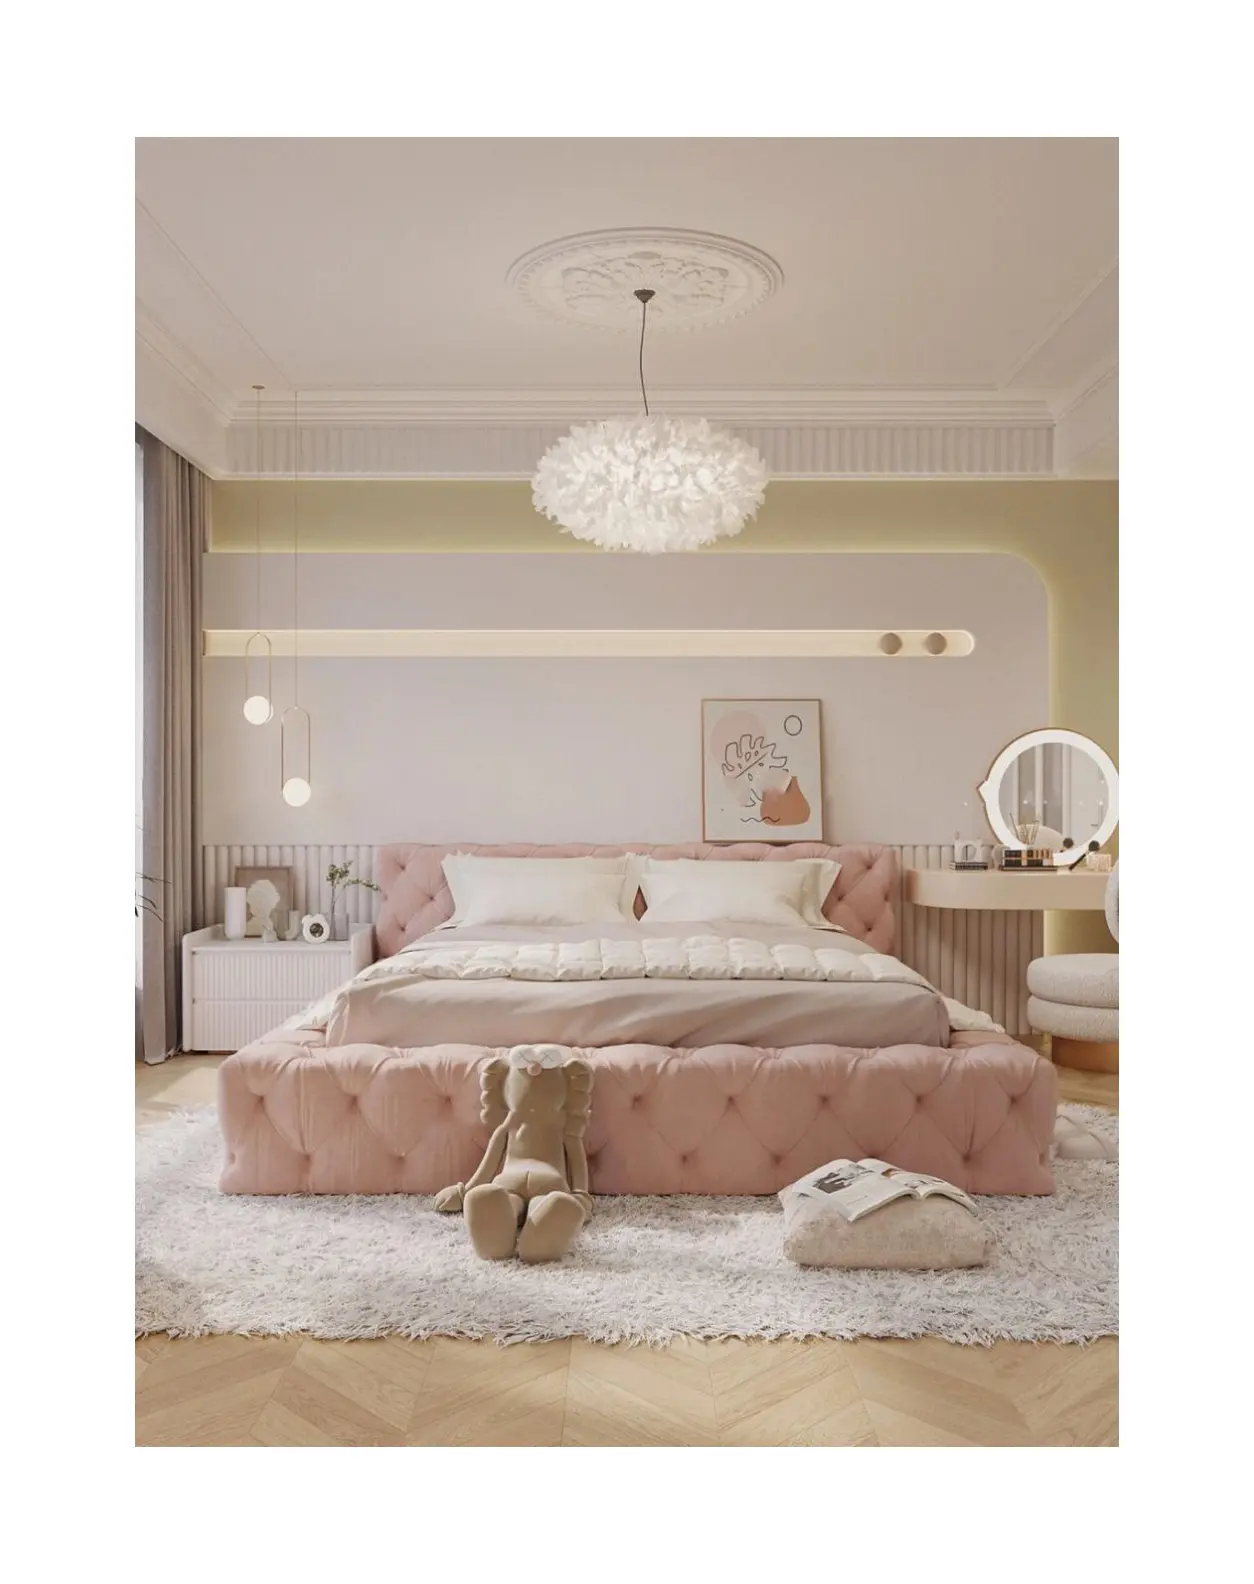 थोक कैरा जला आधुनिक फर्नीचर टफ्टेड कपड़े स्लेट डोमेटरी होटल के कमरे राजा रानी डबल कपड़े इतालवी बिस्तर